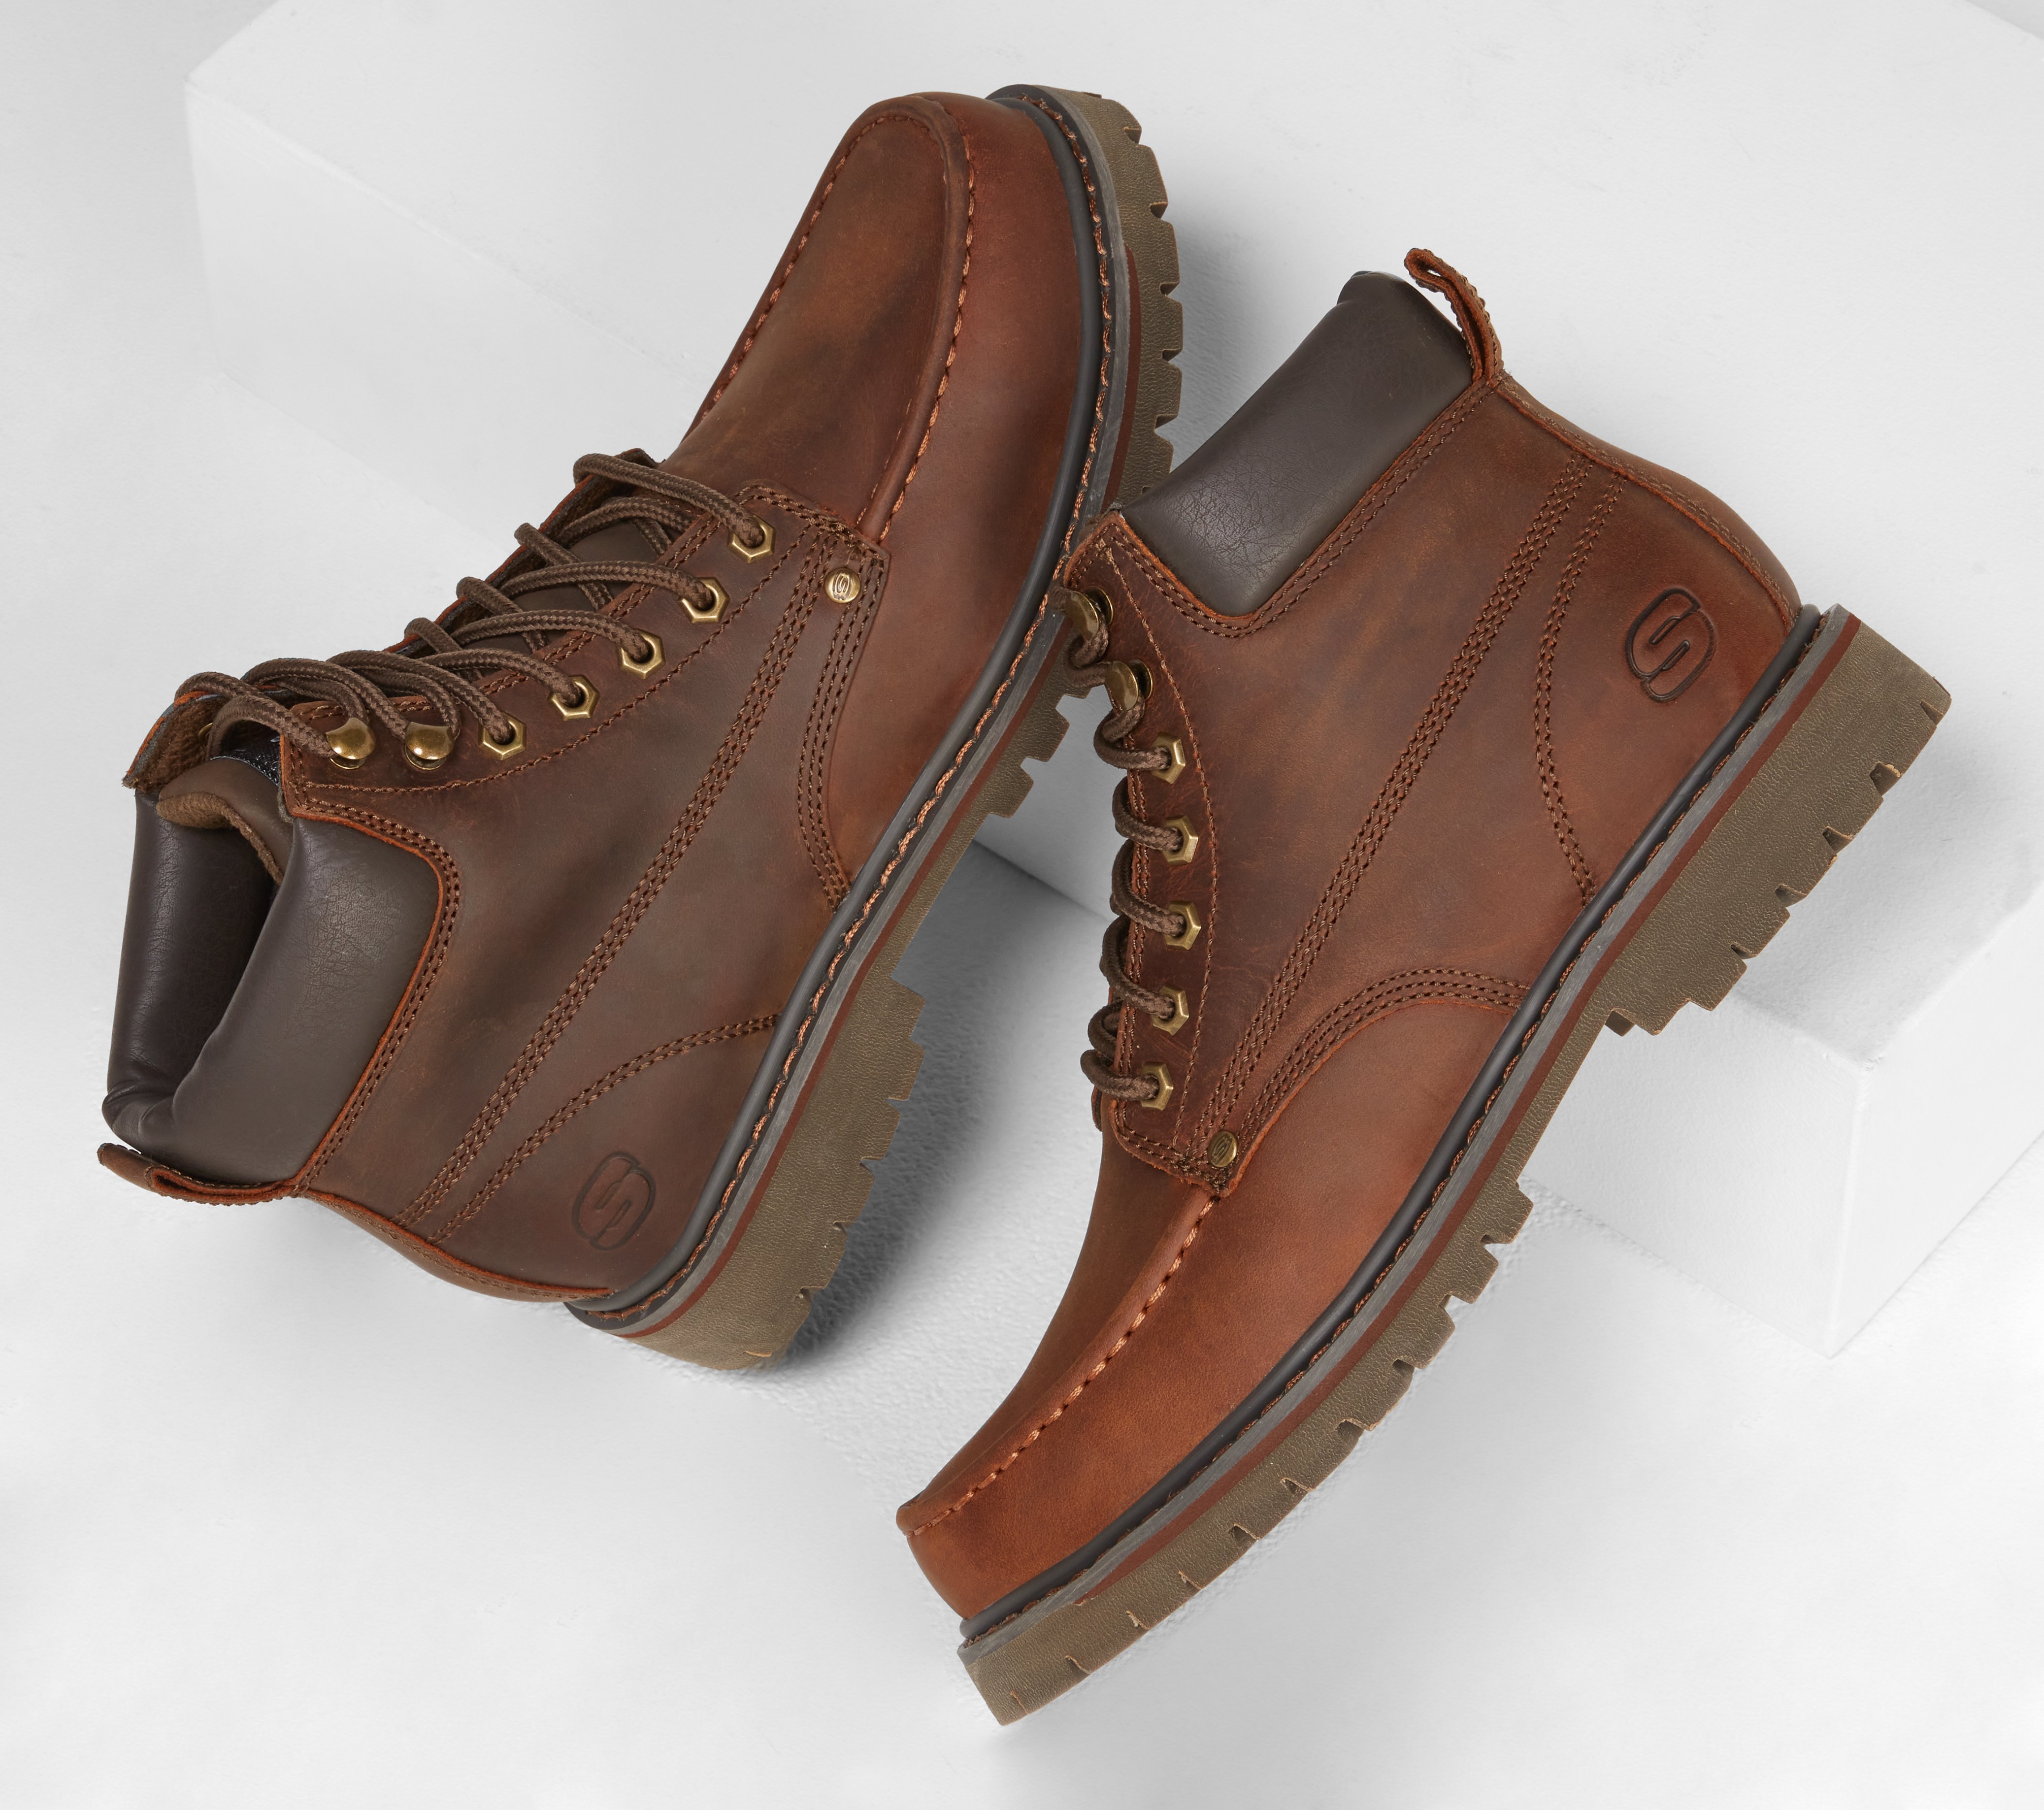 skechers boots brown